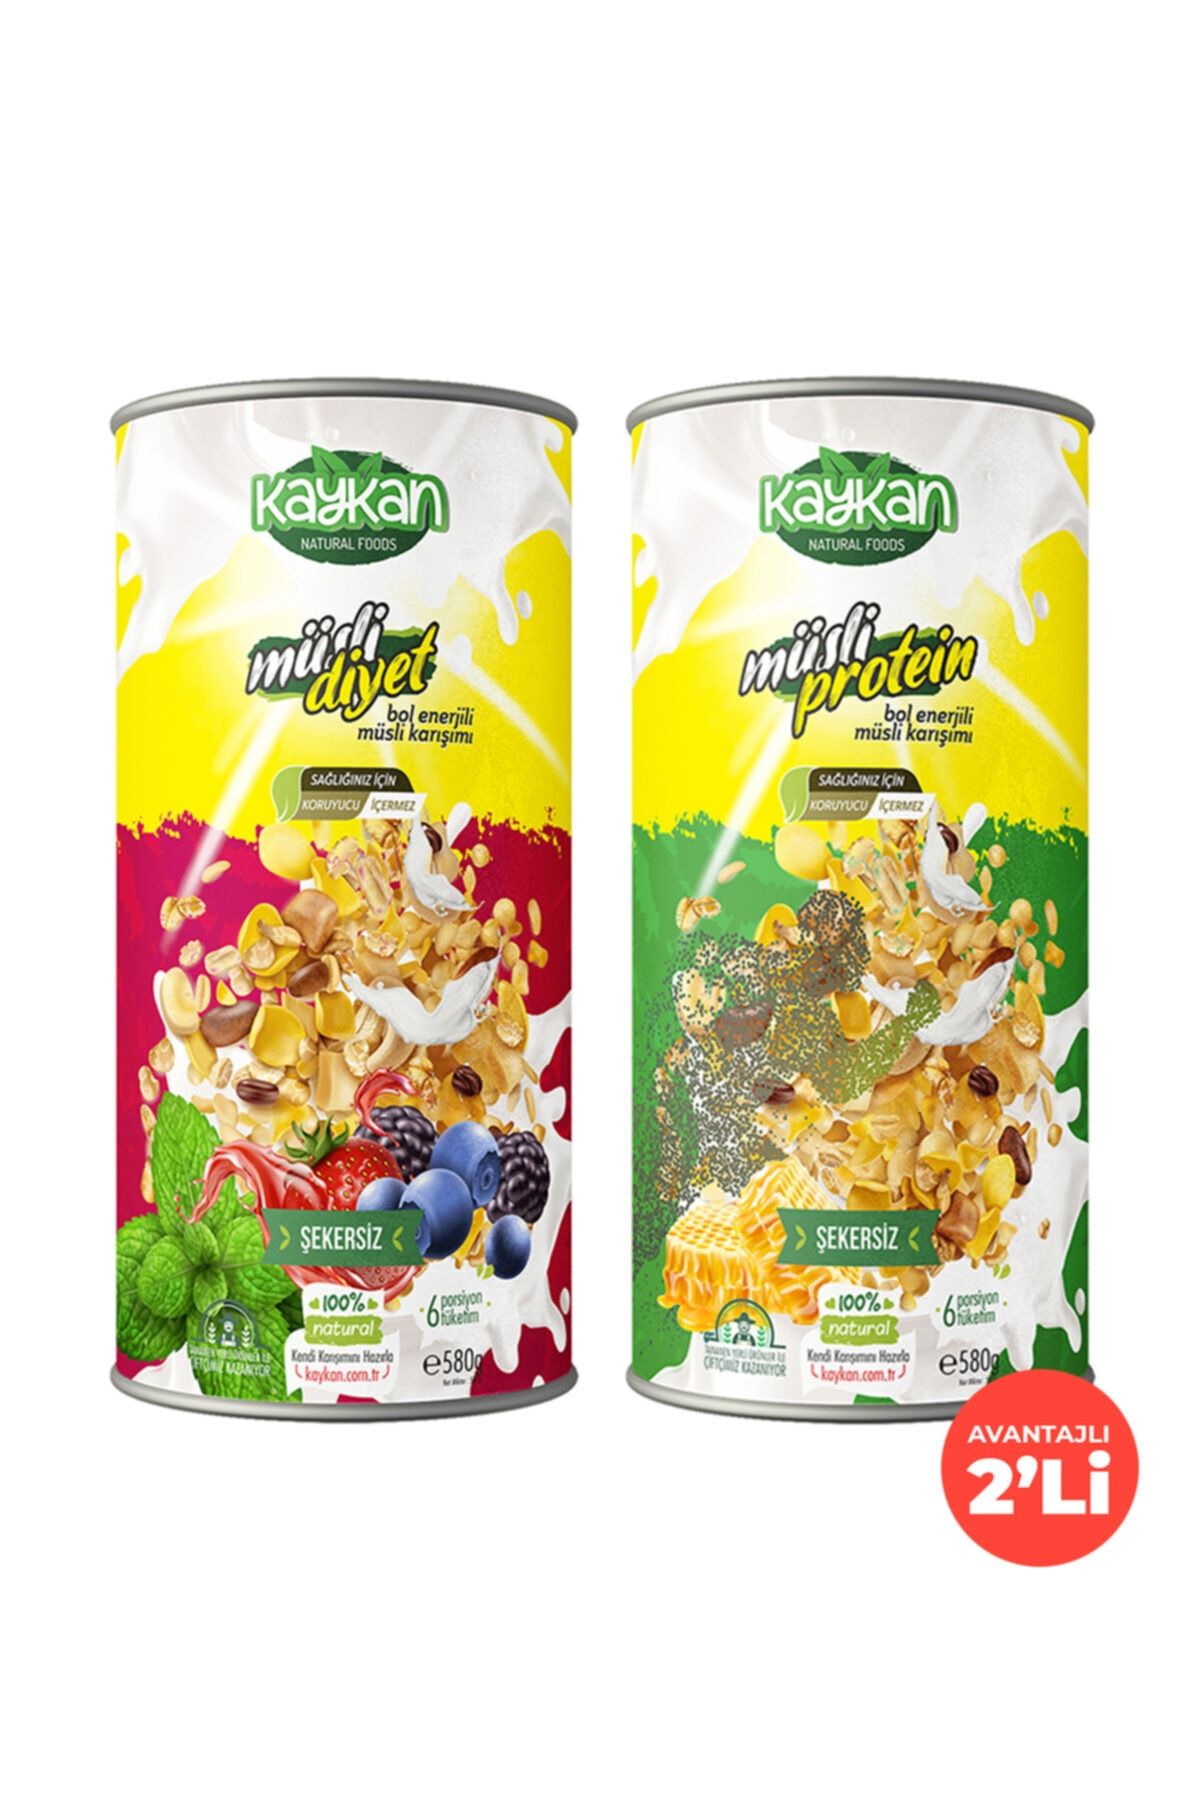 Kaykan Natural Foods Kaykan Müsli Diyet + Müsli Protein Granola 580gr 2'li Paket